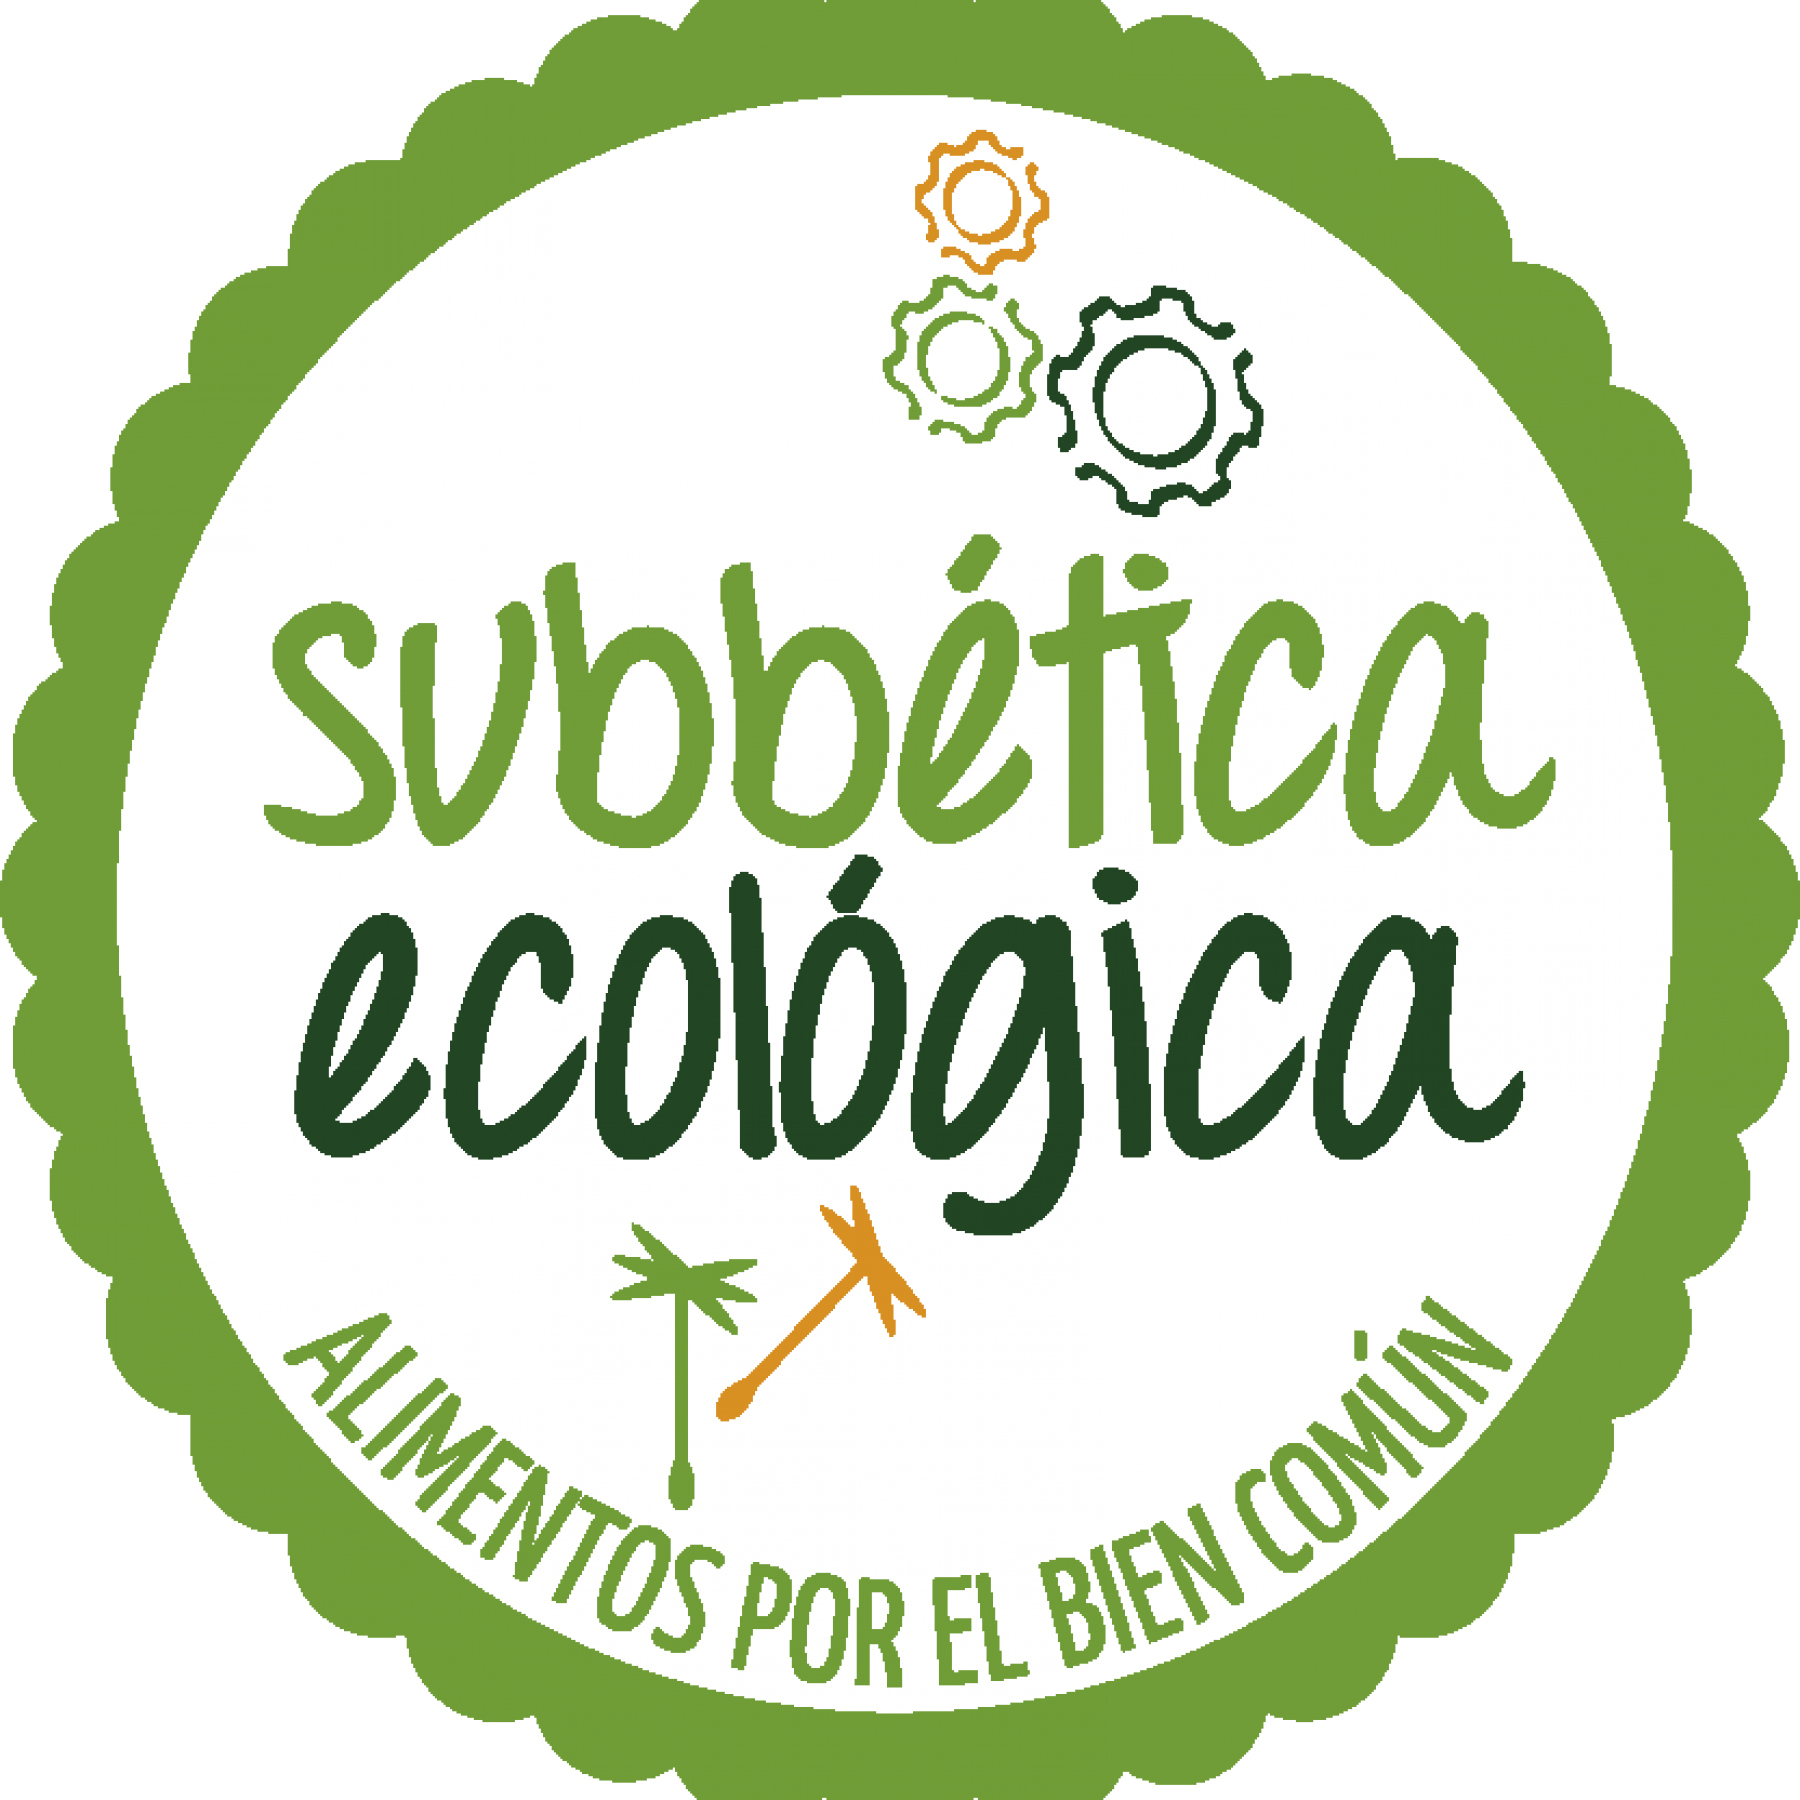 Visit to the Ecocentro Subbética Ecológica, Cabra